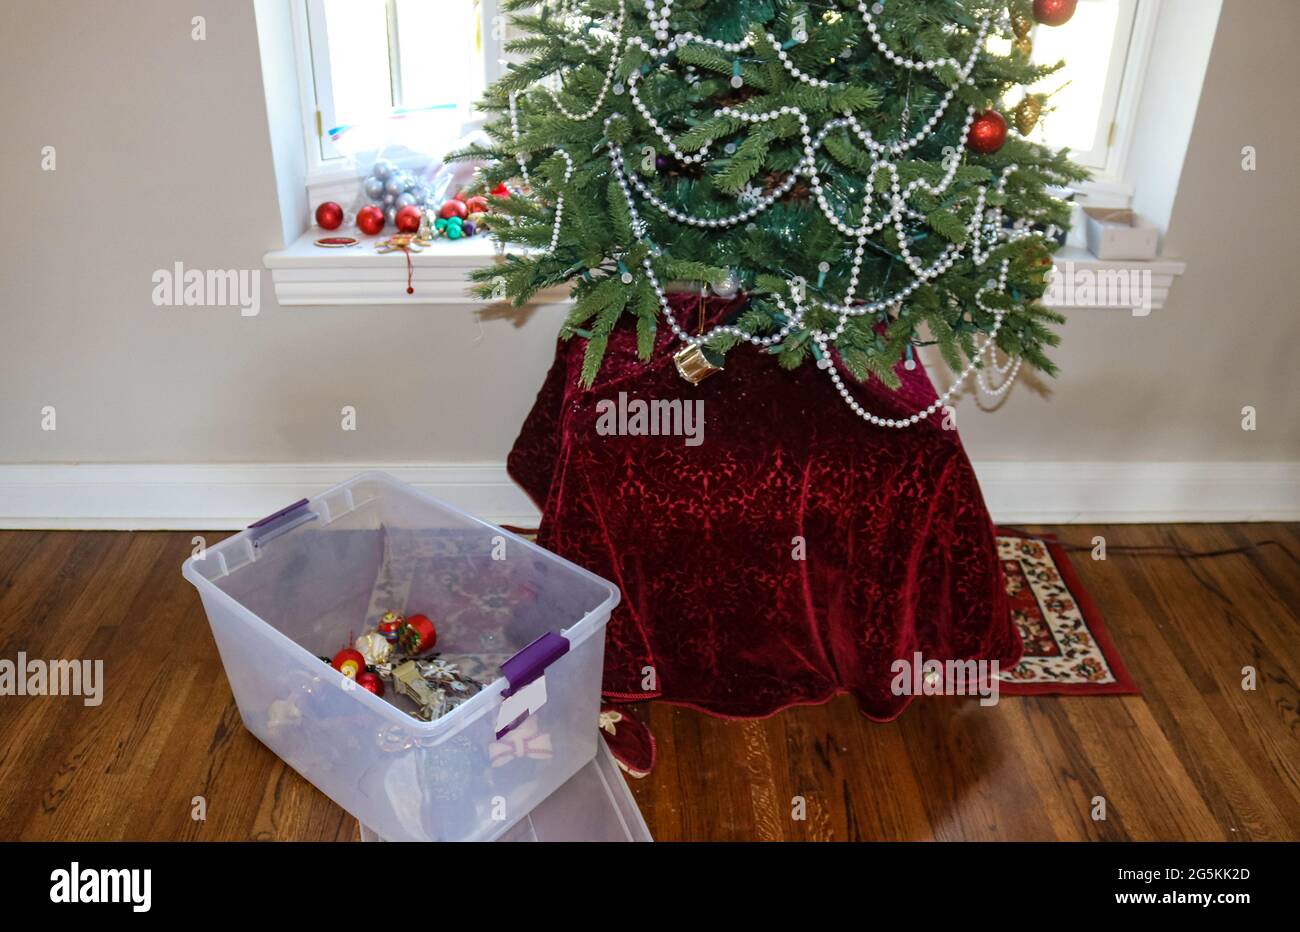 En descendant l'arbre de Noël... la plupart des ornements sont allés avec un contenant en plastique qui les retient sur le sol près de l'arbre Banque D'Images